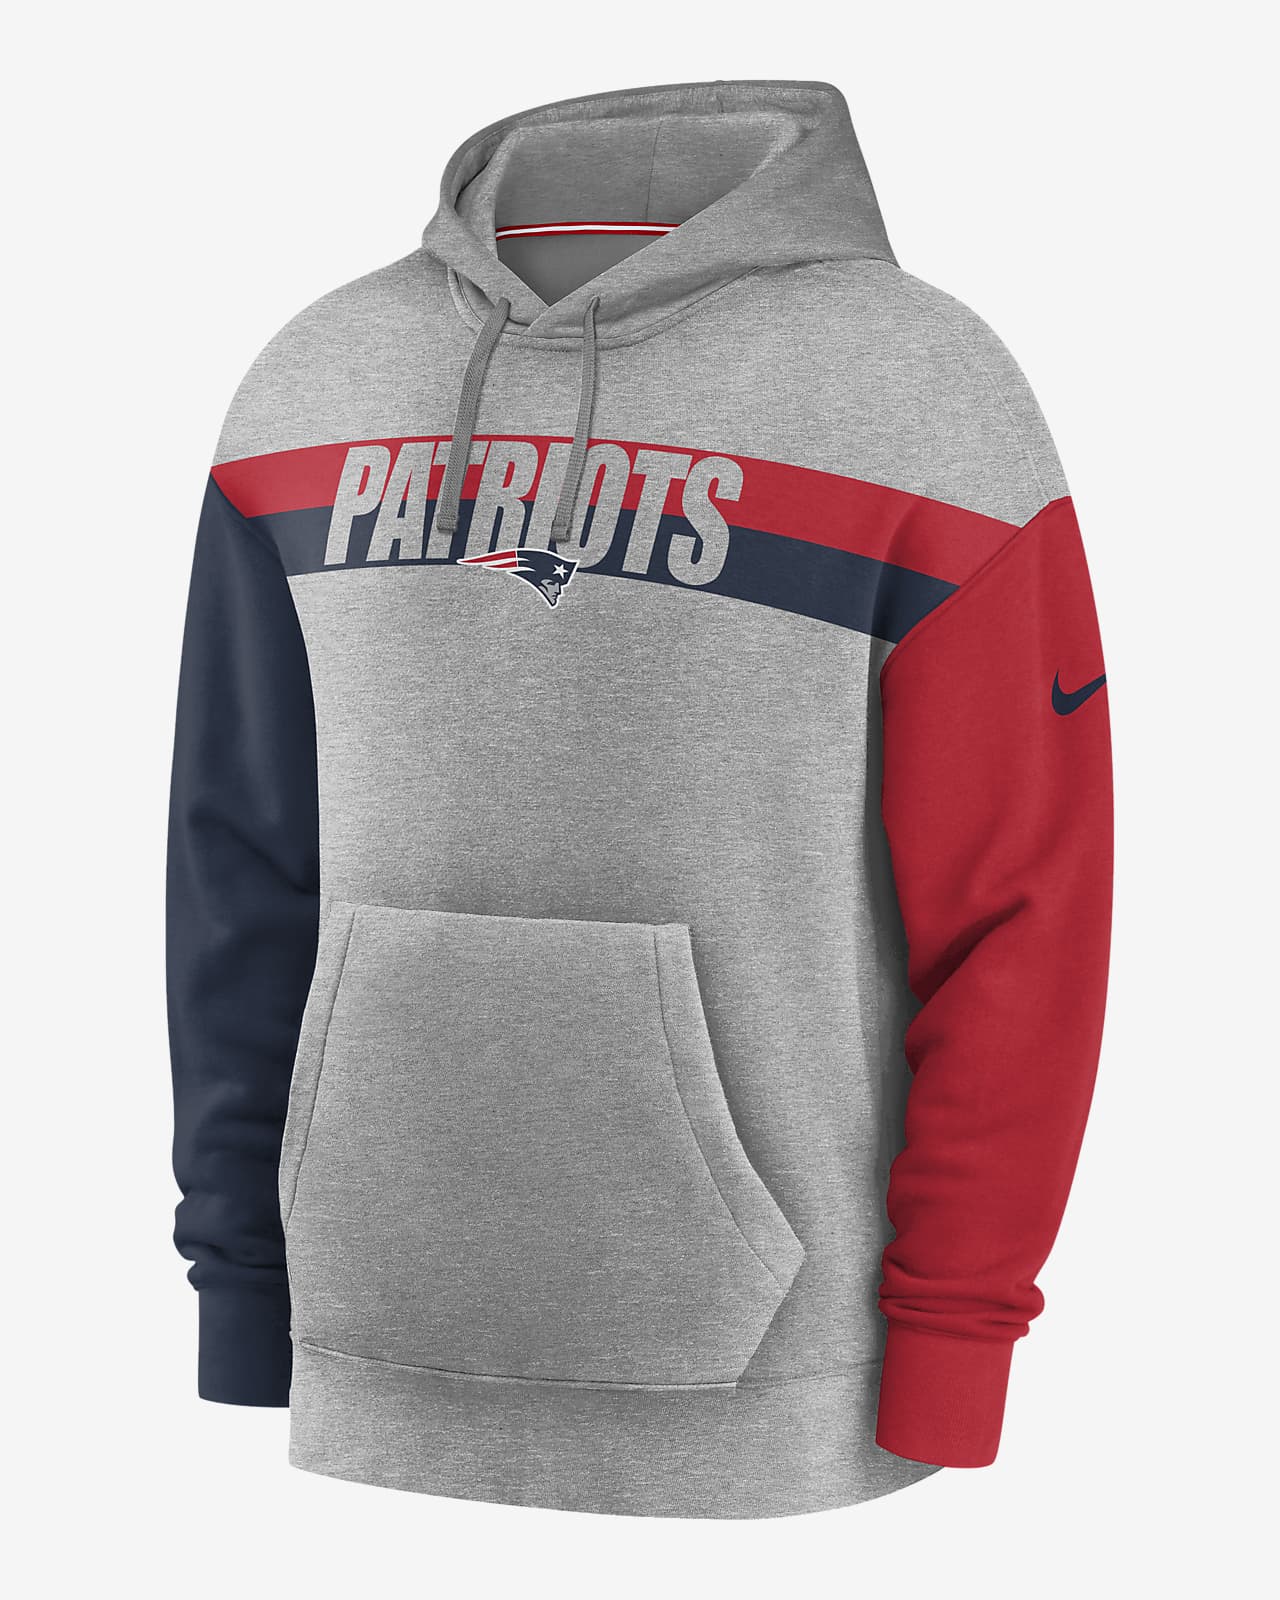 patriots hoodie canada